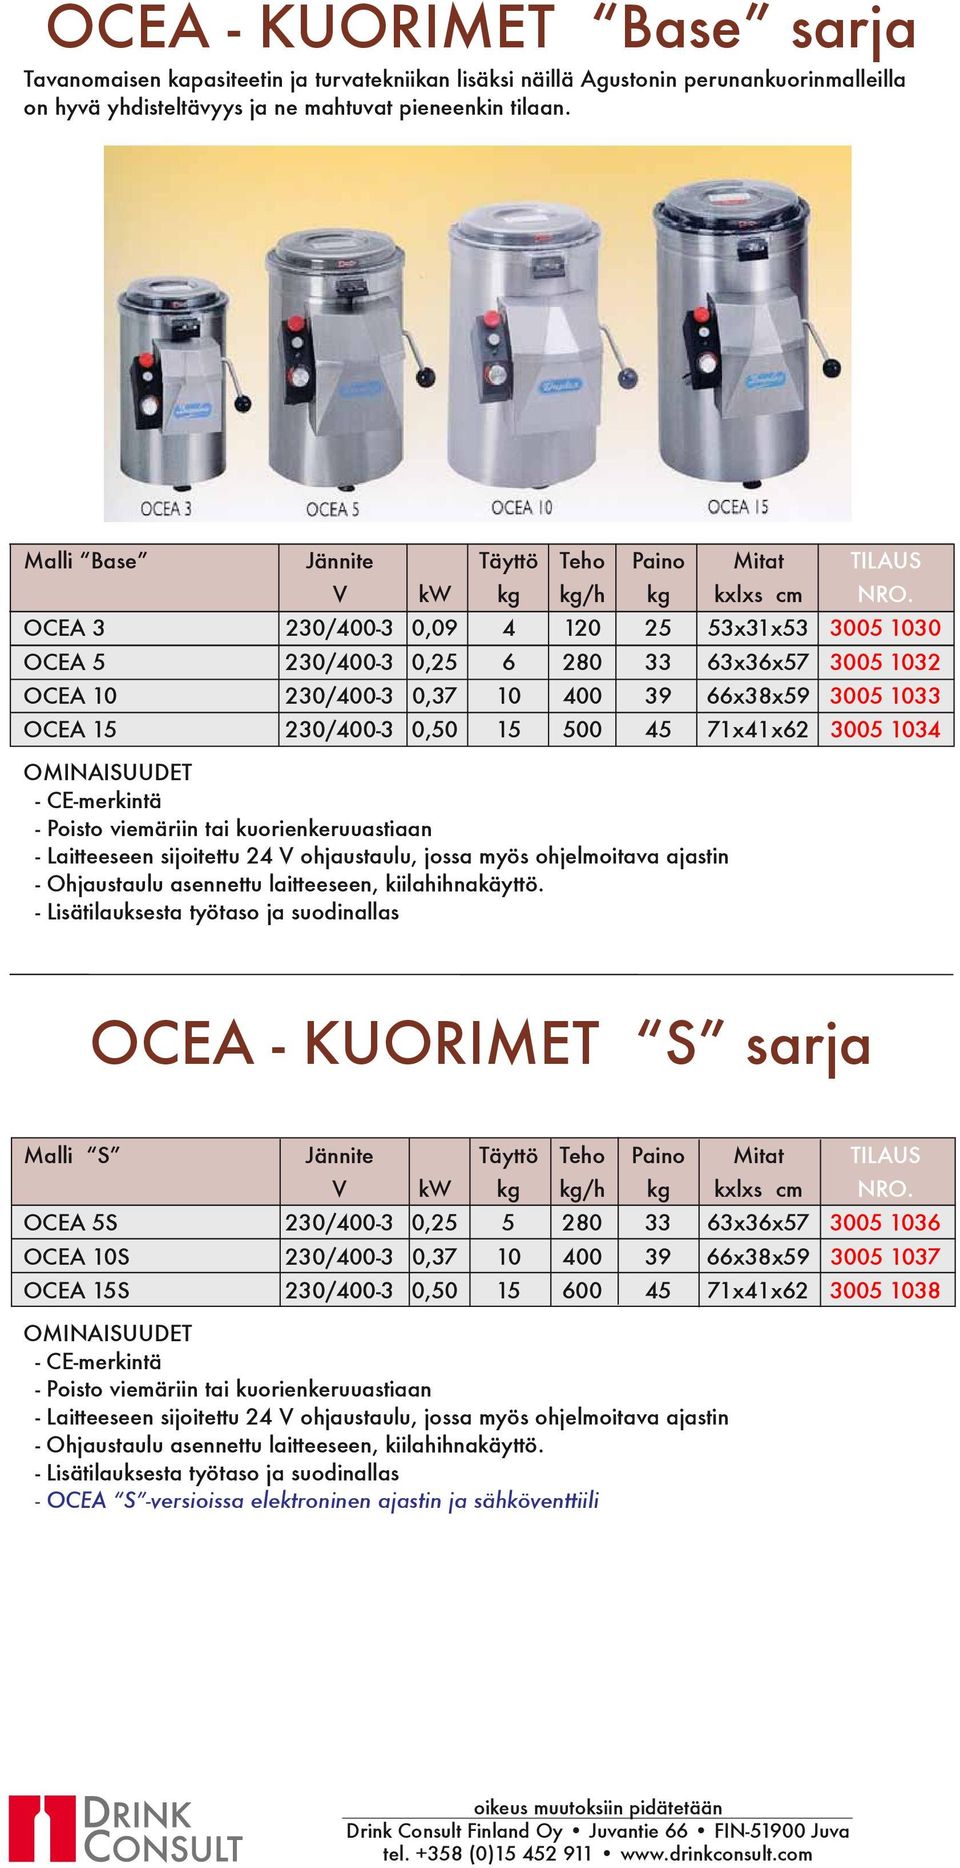 1033 OCEA 15 230/400-3 0,50 15 500 45 71x41x62 3005 1034 - Poisto viemäriin tai kuorienkeruuastiaan - Laitteeseen sijoitettu 24 V ohjaustaulu, jossa myös ohjelmoitava ajastin - Ohjaustaulu asennettu